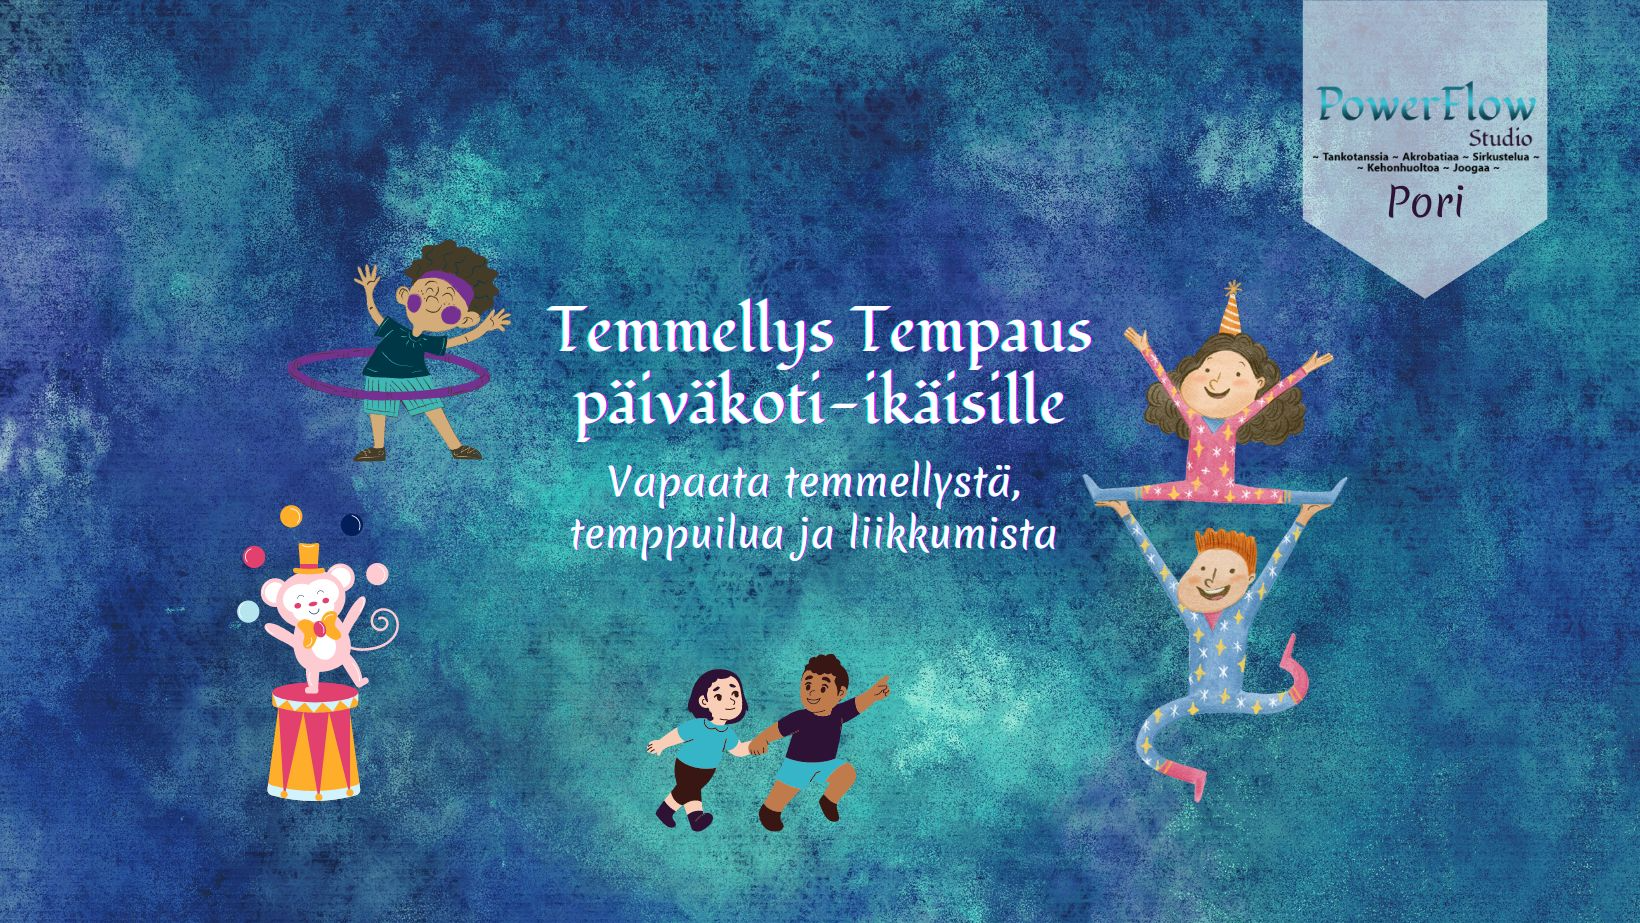 Temmellys Tempaus päiväkoti-ikäisille to 29.6. klo 16.30-17.45 / Pori